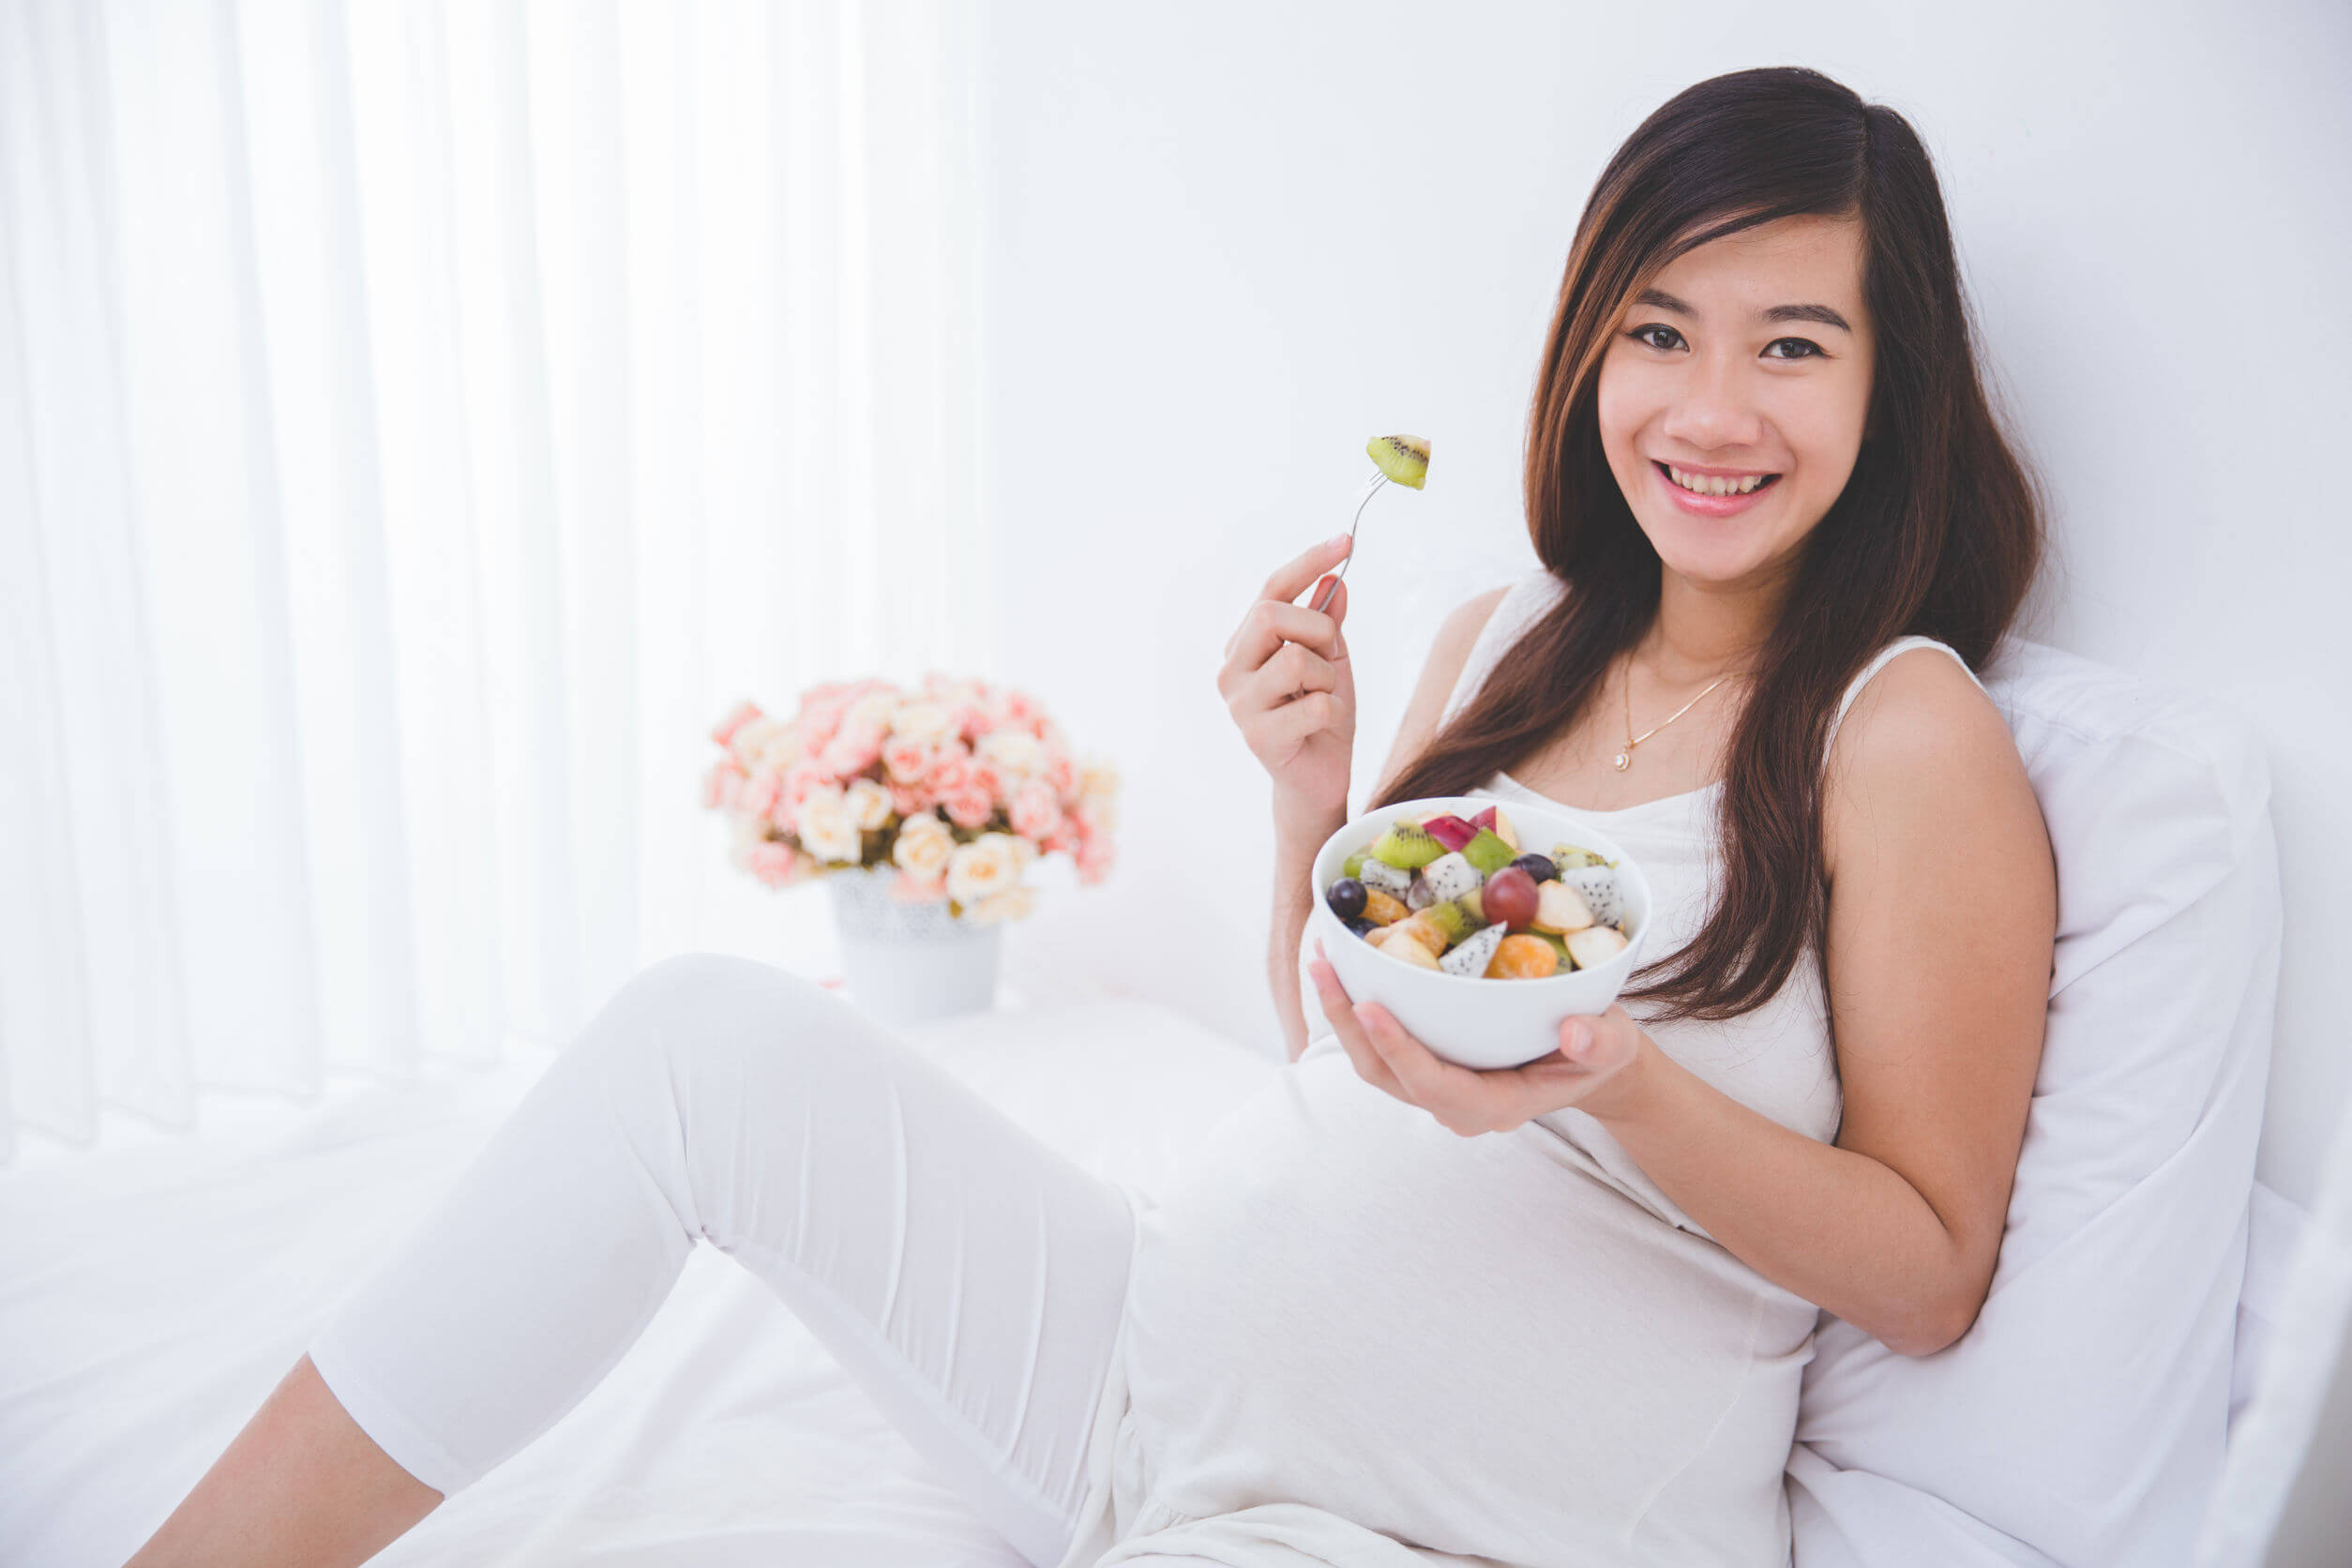 Raskaana oleva nainen istuu sängyssä syömässä hedelmäsalaattia.